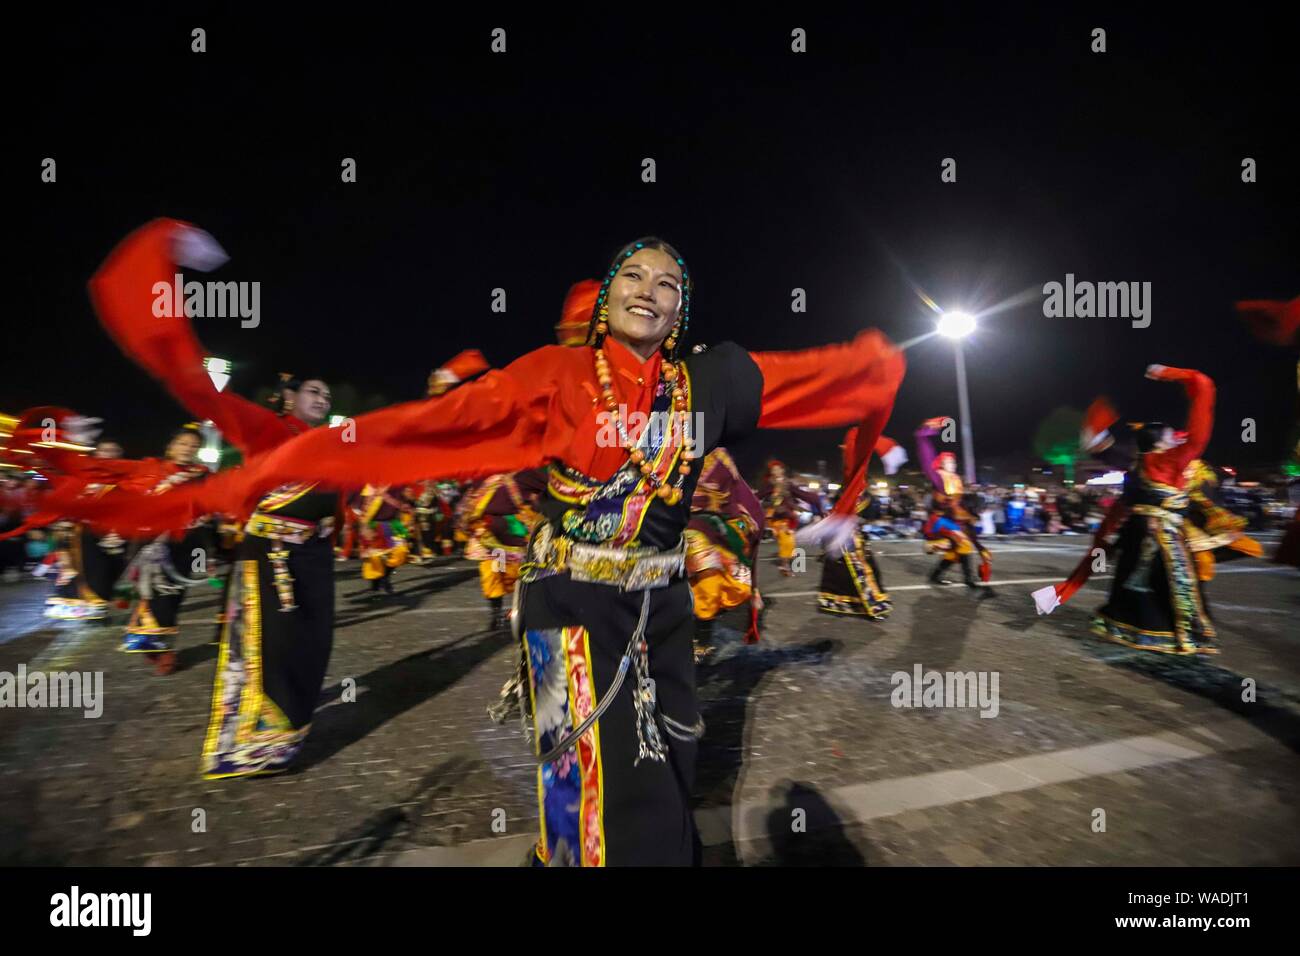 Il popolo cinese dei tibetani gruppo etnico si riuniranno presso un falò party per celebrare l'annuale Yushu Qinghai Horse Racing Festival in tibetano Yushu Autonomo Foto Stock